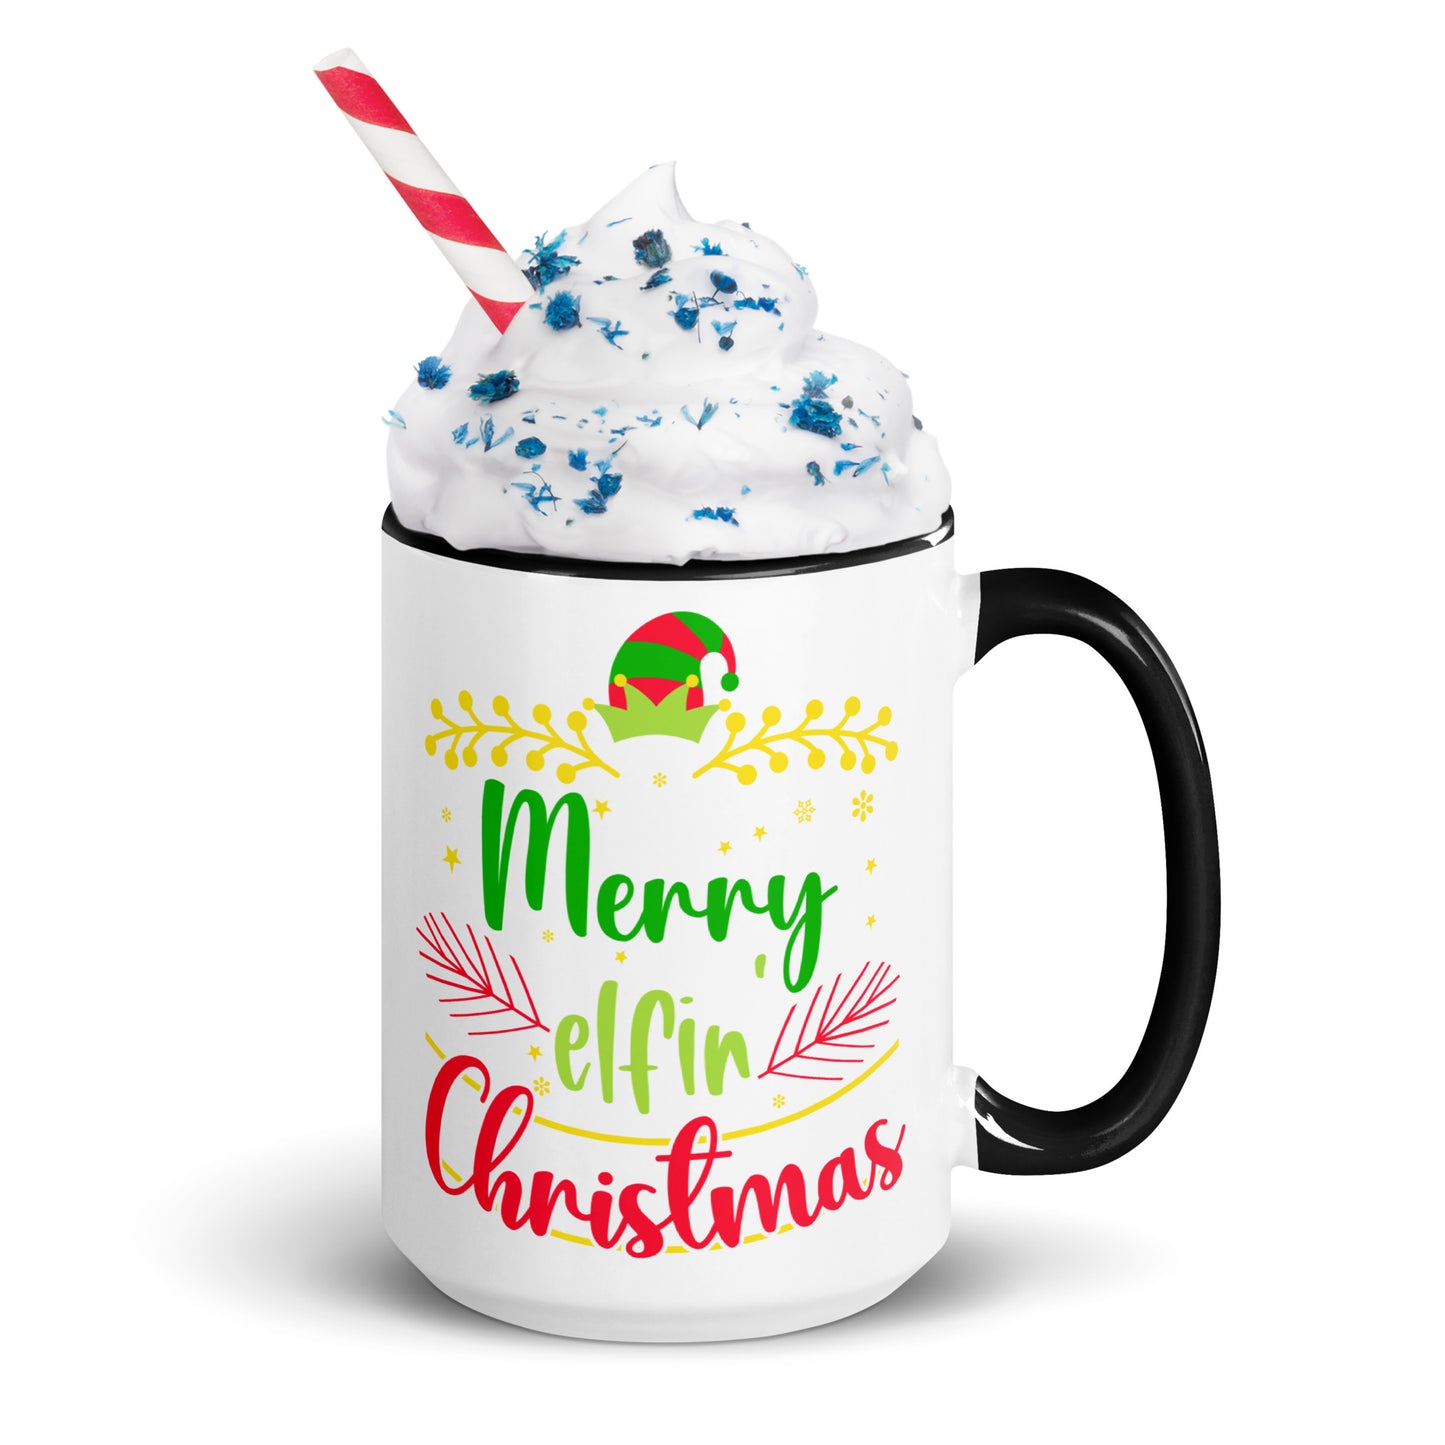 'Elfin' Christmas' Mug